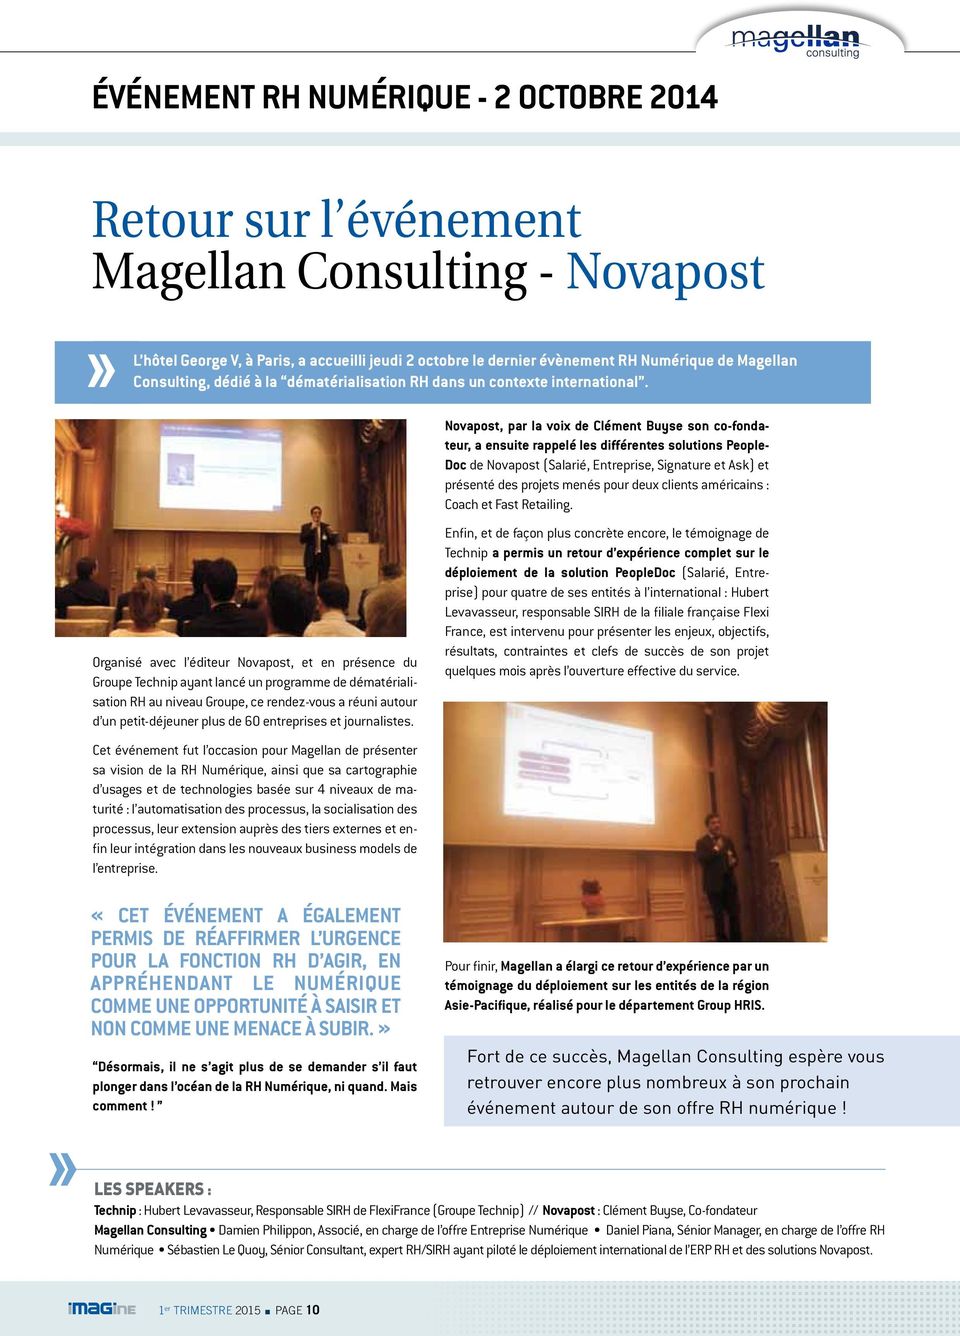 Novapost, par la voix de Clément Buyse son co-fondateur, a ensuite rappelé les différentes solutions People- Doc de Novapost (Salarié, Entreprise, Signature et Ask) et présenté des projets menés pour